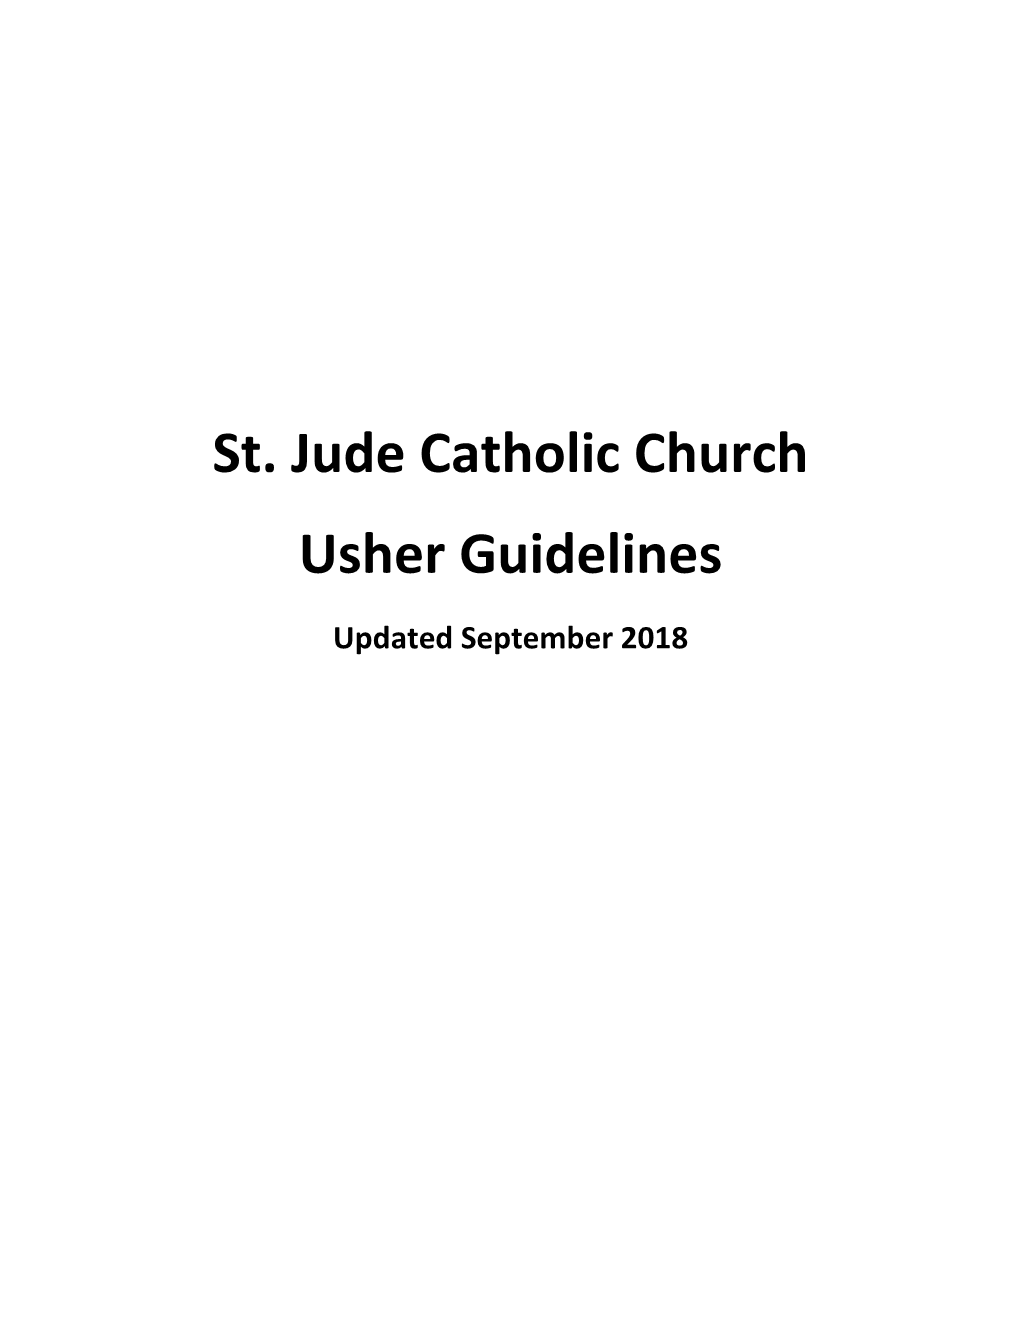 St. Jude Catholic Church Usher Guidelines